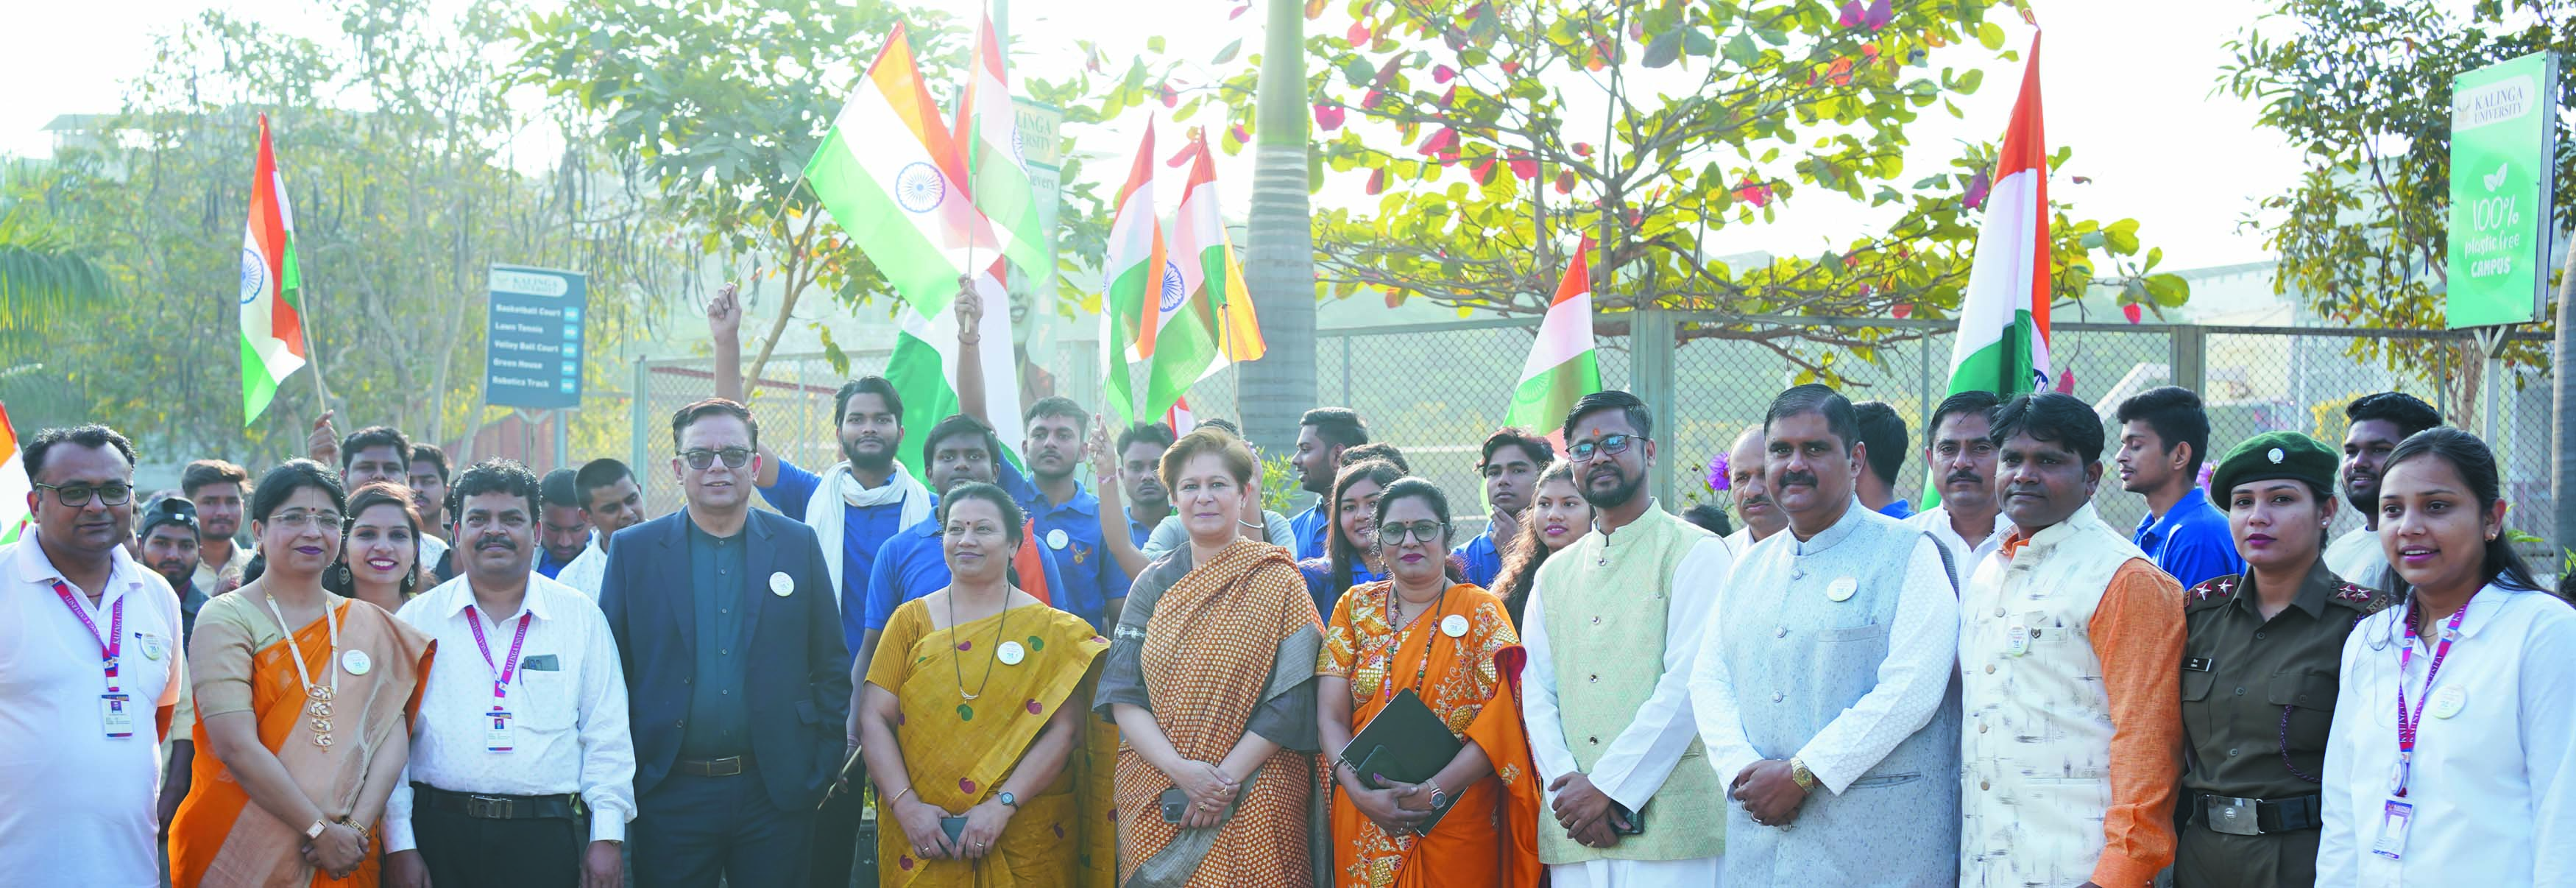 कलिंगा विवि ने धूमधाम से मनाया गणतंत्र दिवस